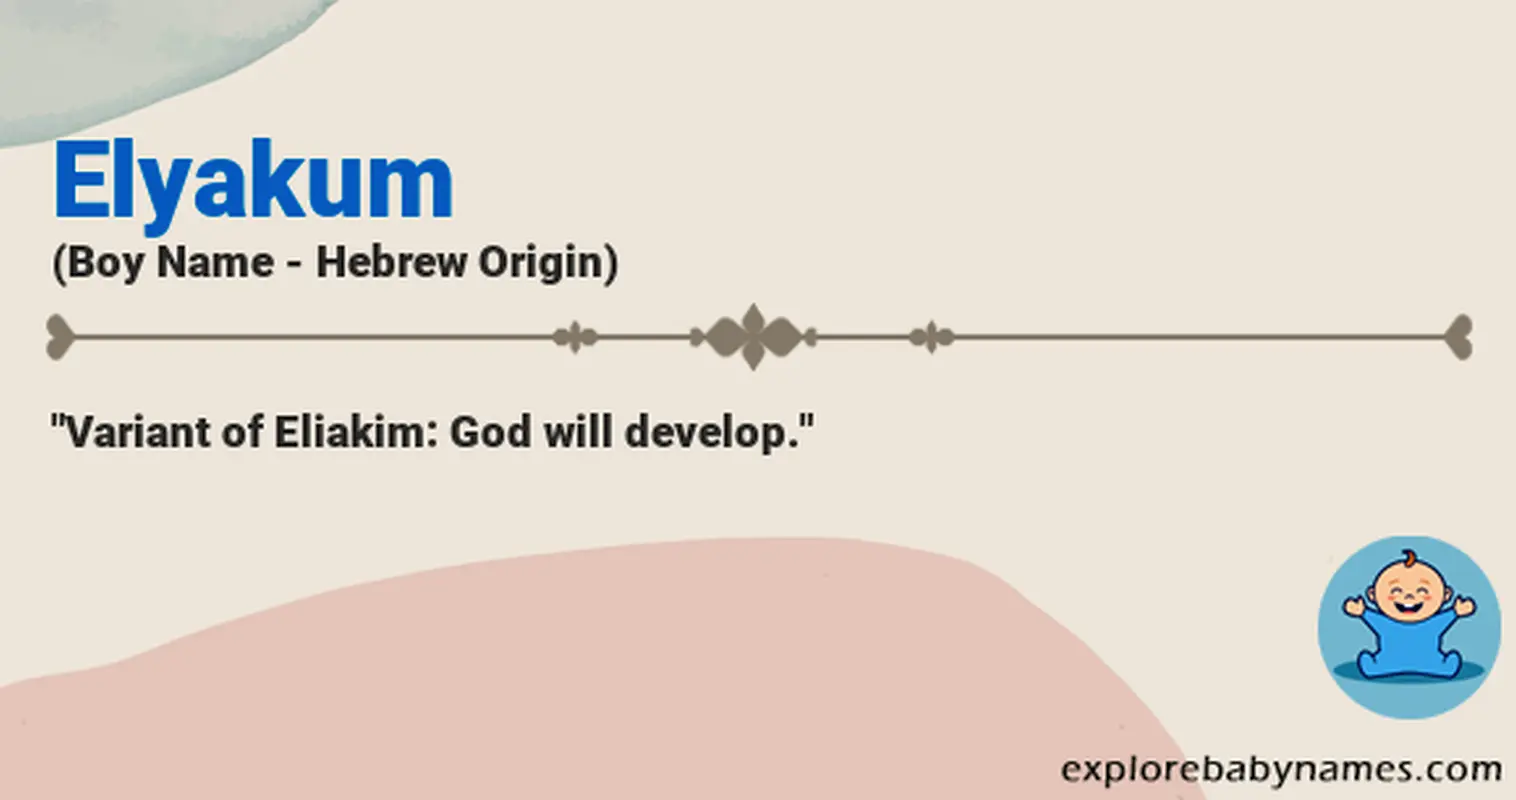 Meaning of Elyakum